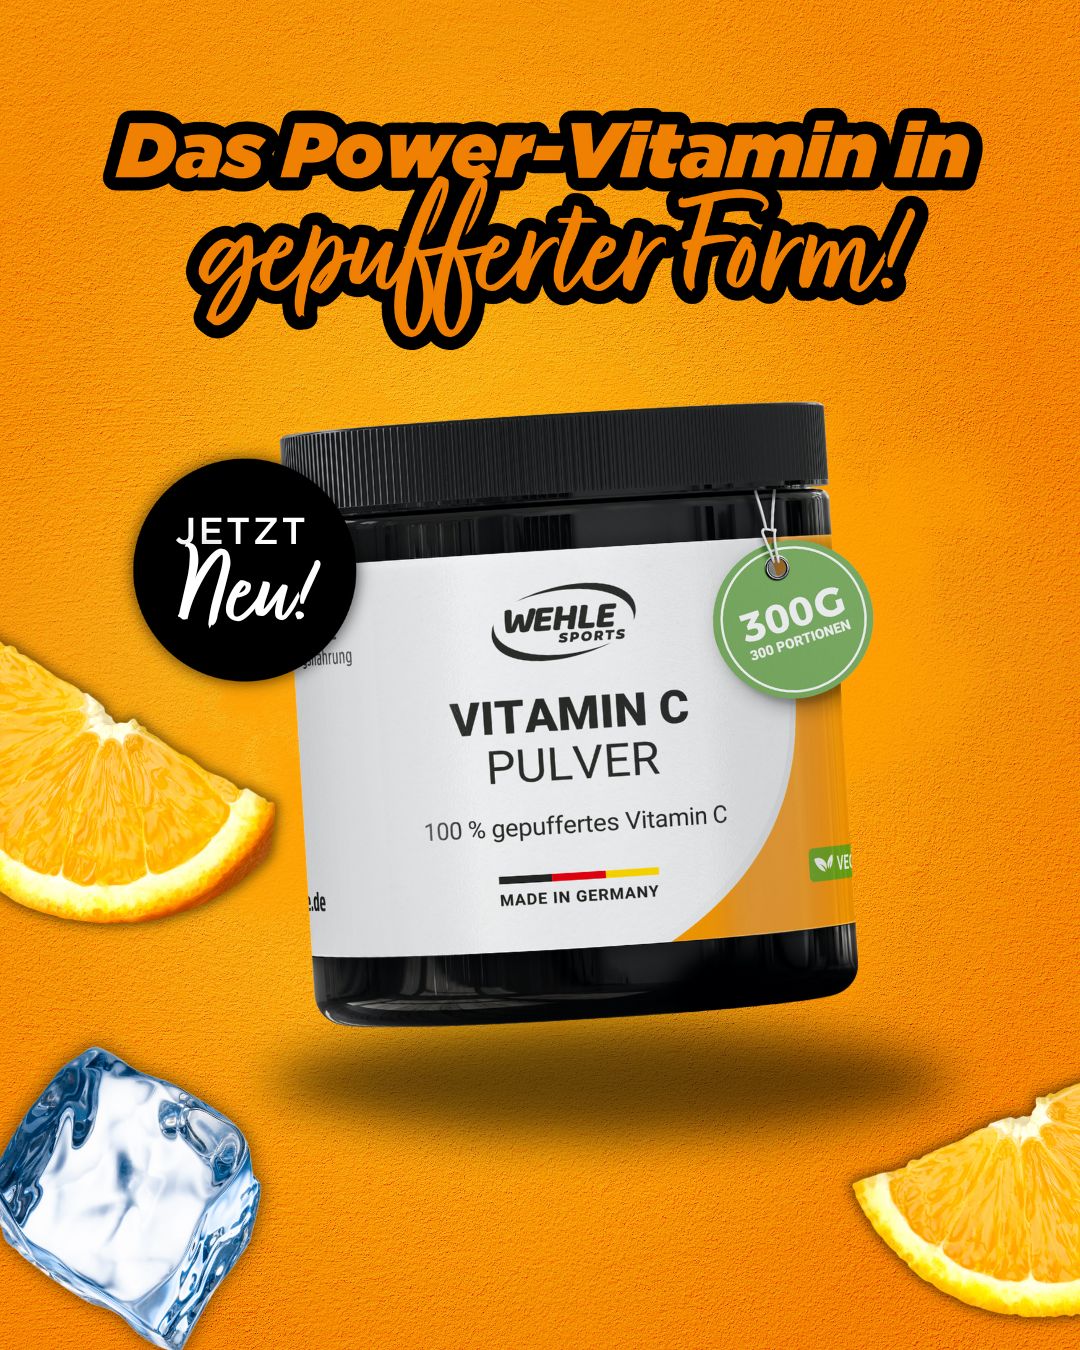 Vitamin C: Das Power-Vitamin in gepufferter Form